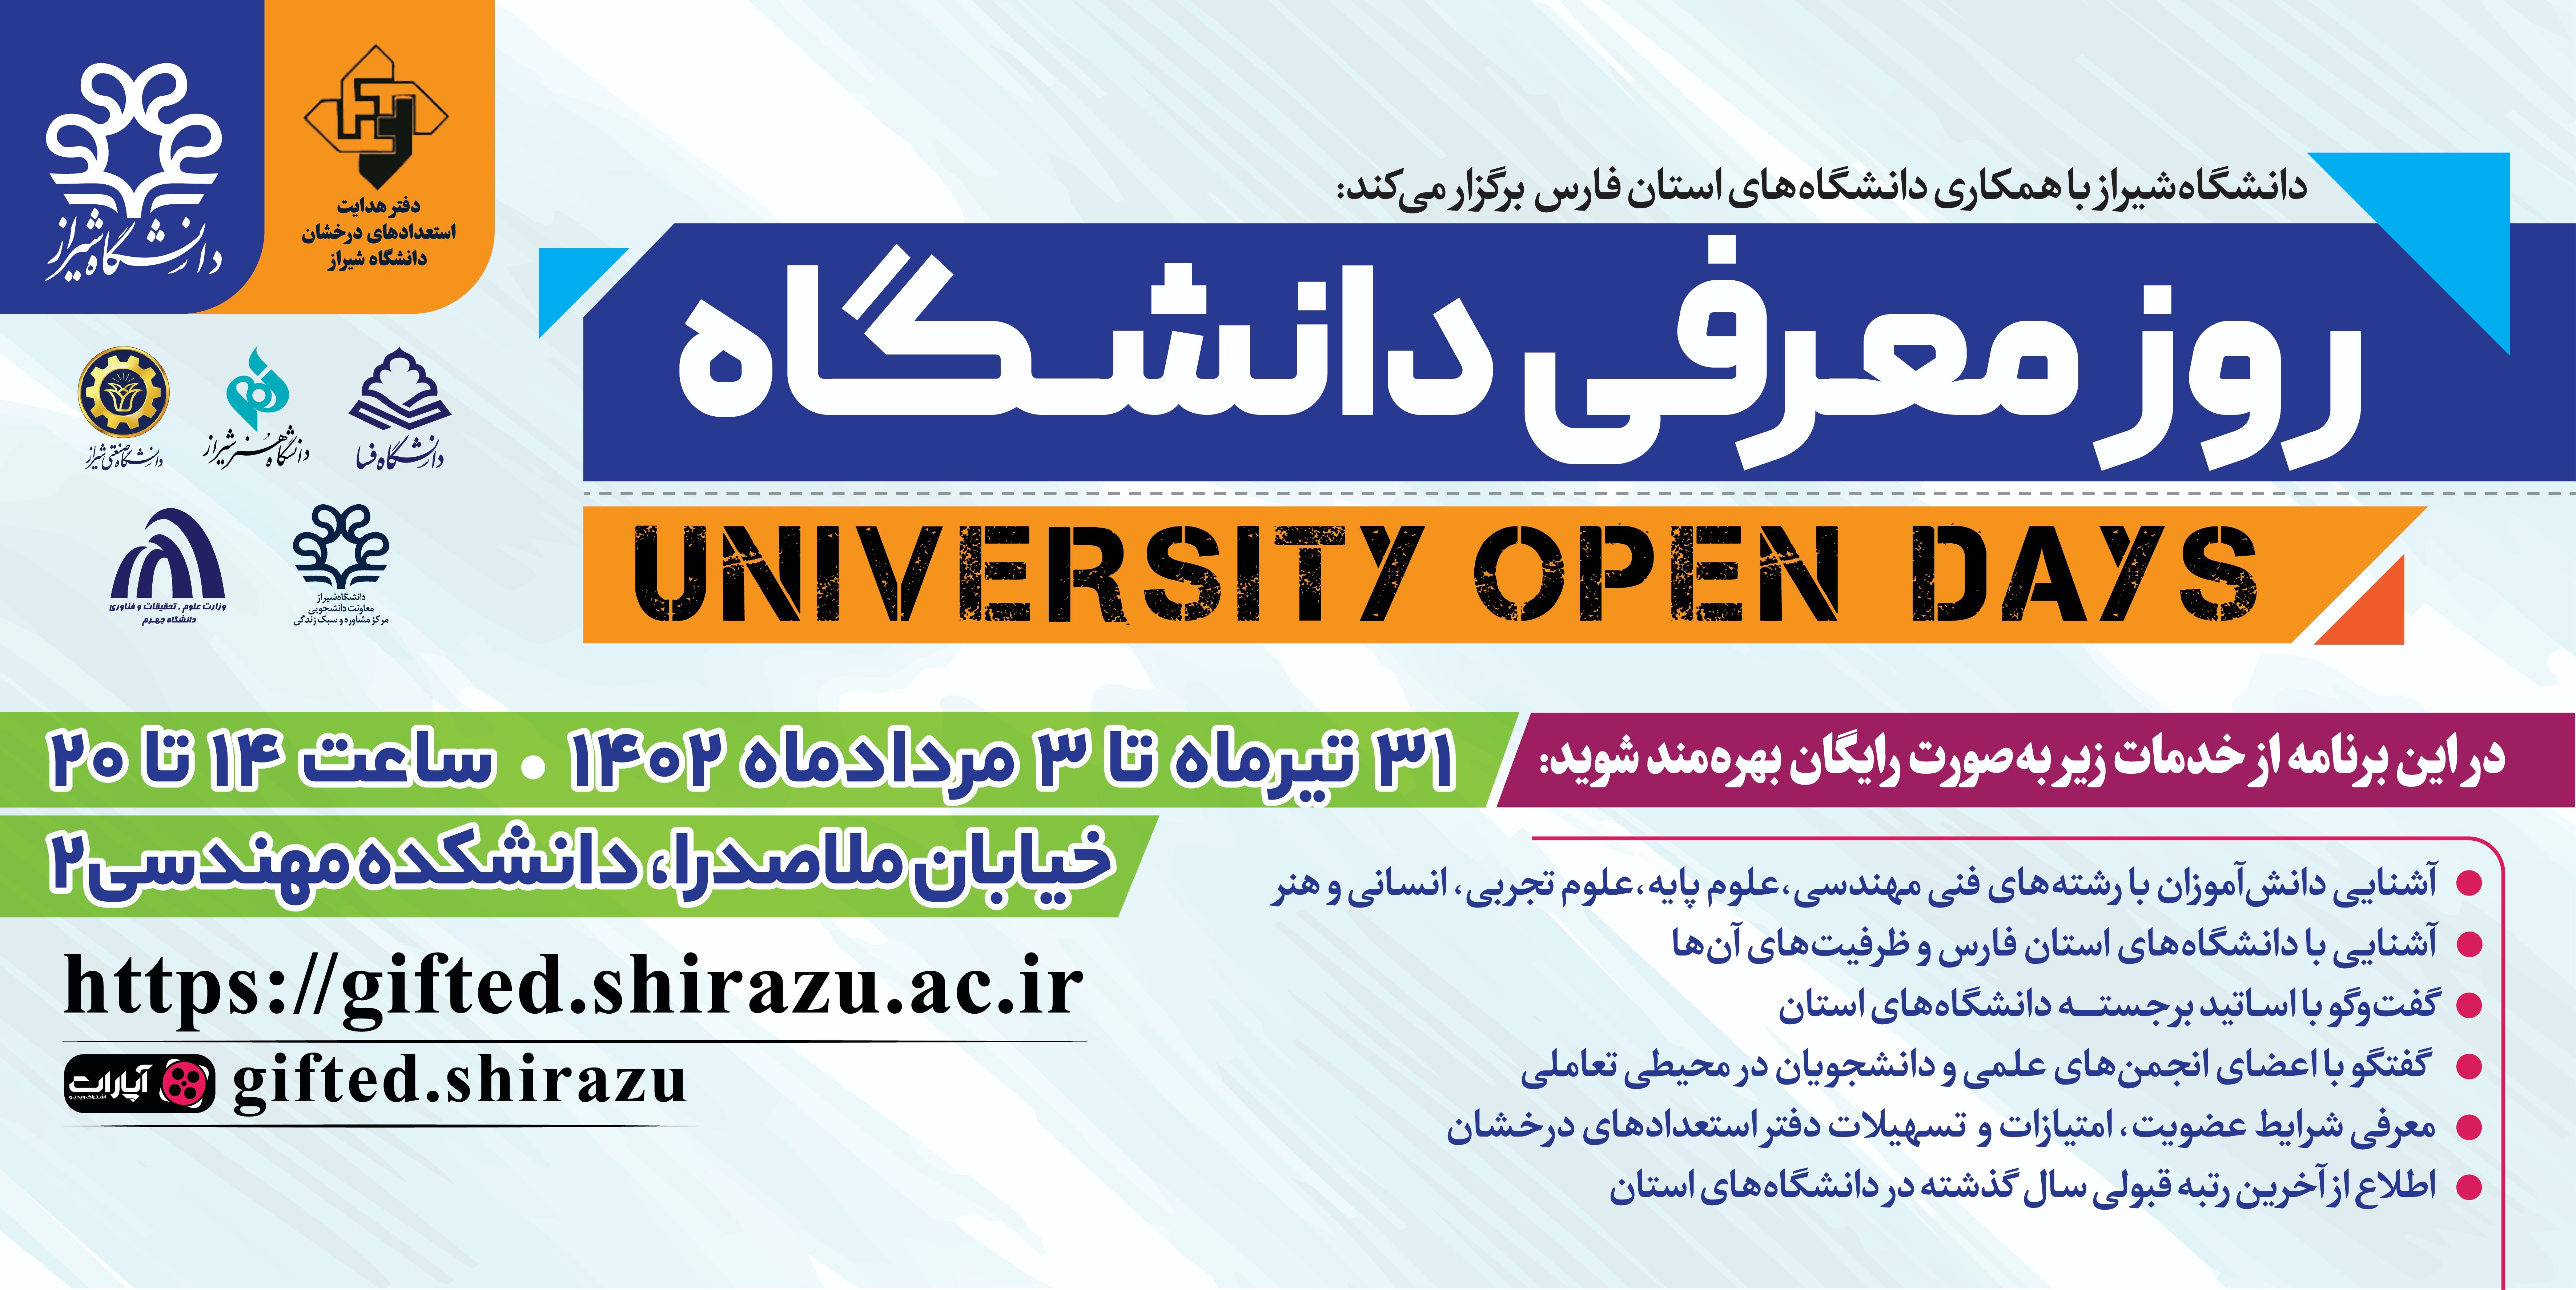 برگزاری رویداد «روز معرفی دانشگاه» در دانشکده مهندسی شیراز